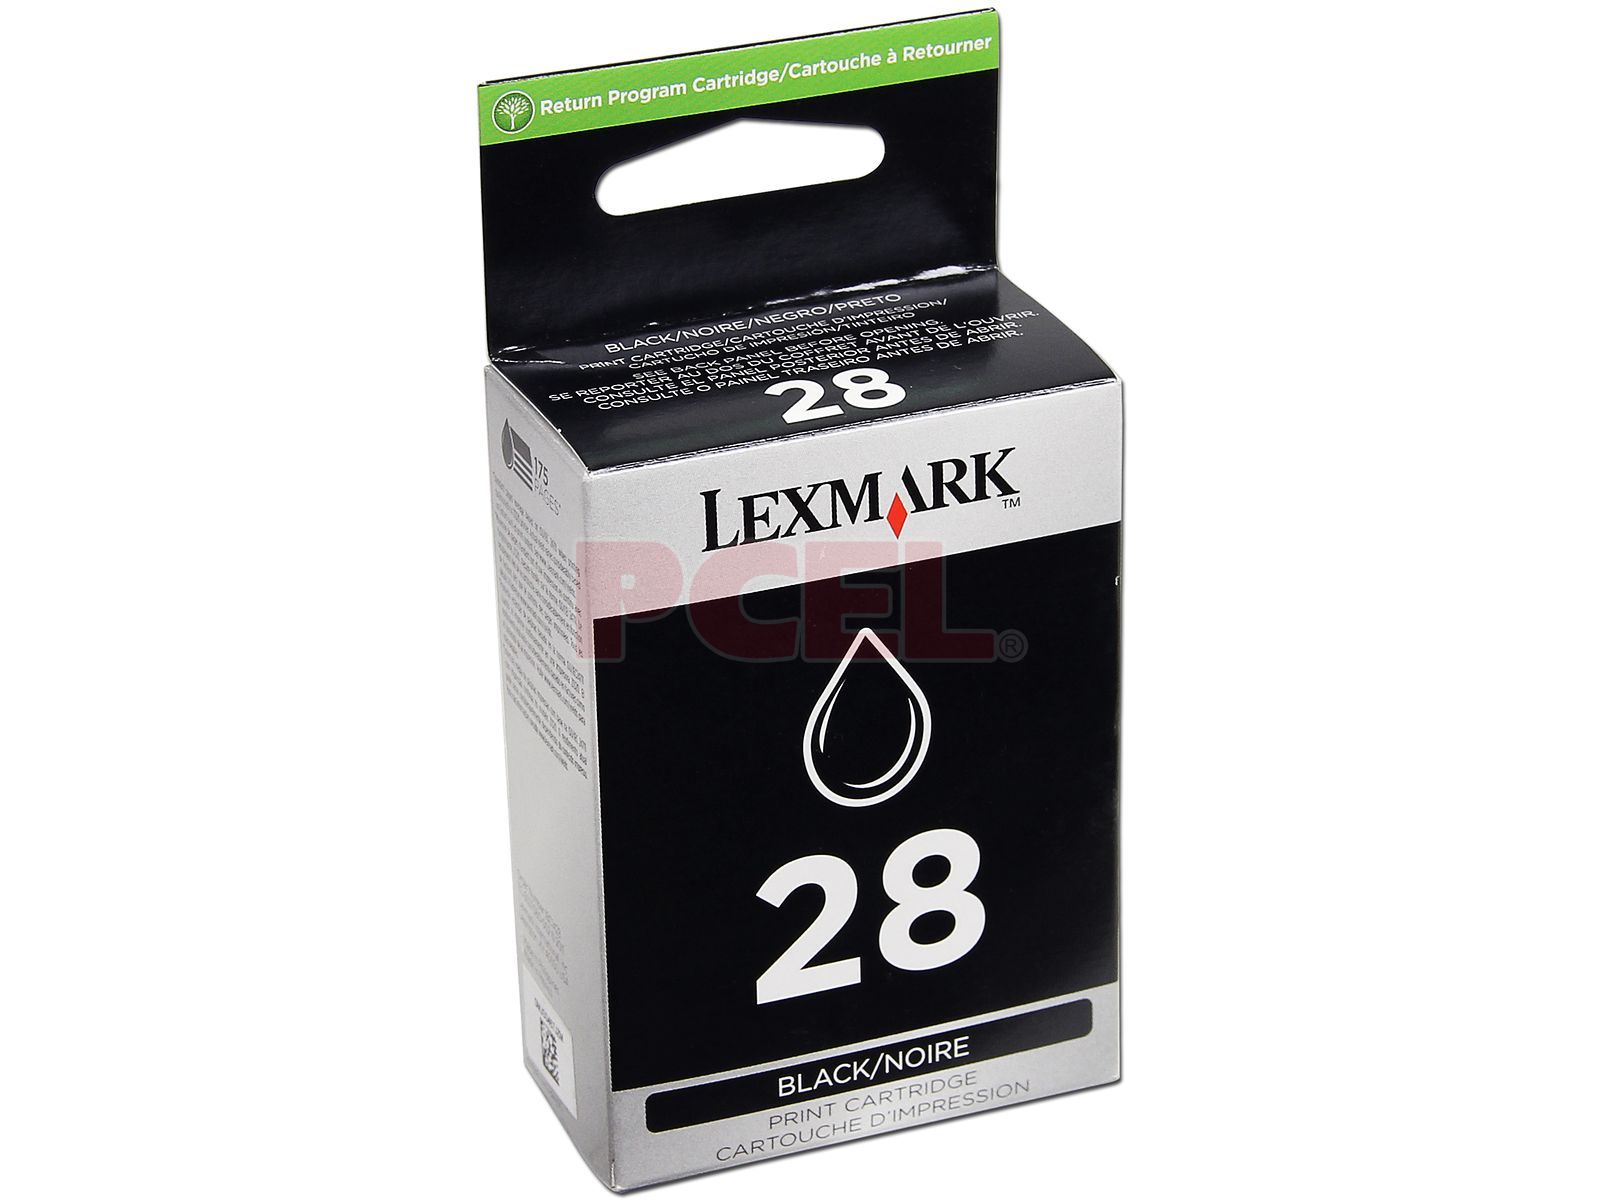 Cartucho de Tinta Lexmark 28 Negro, Modelo: